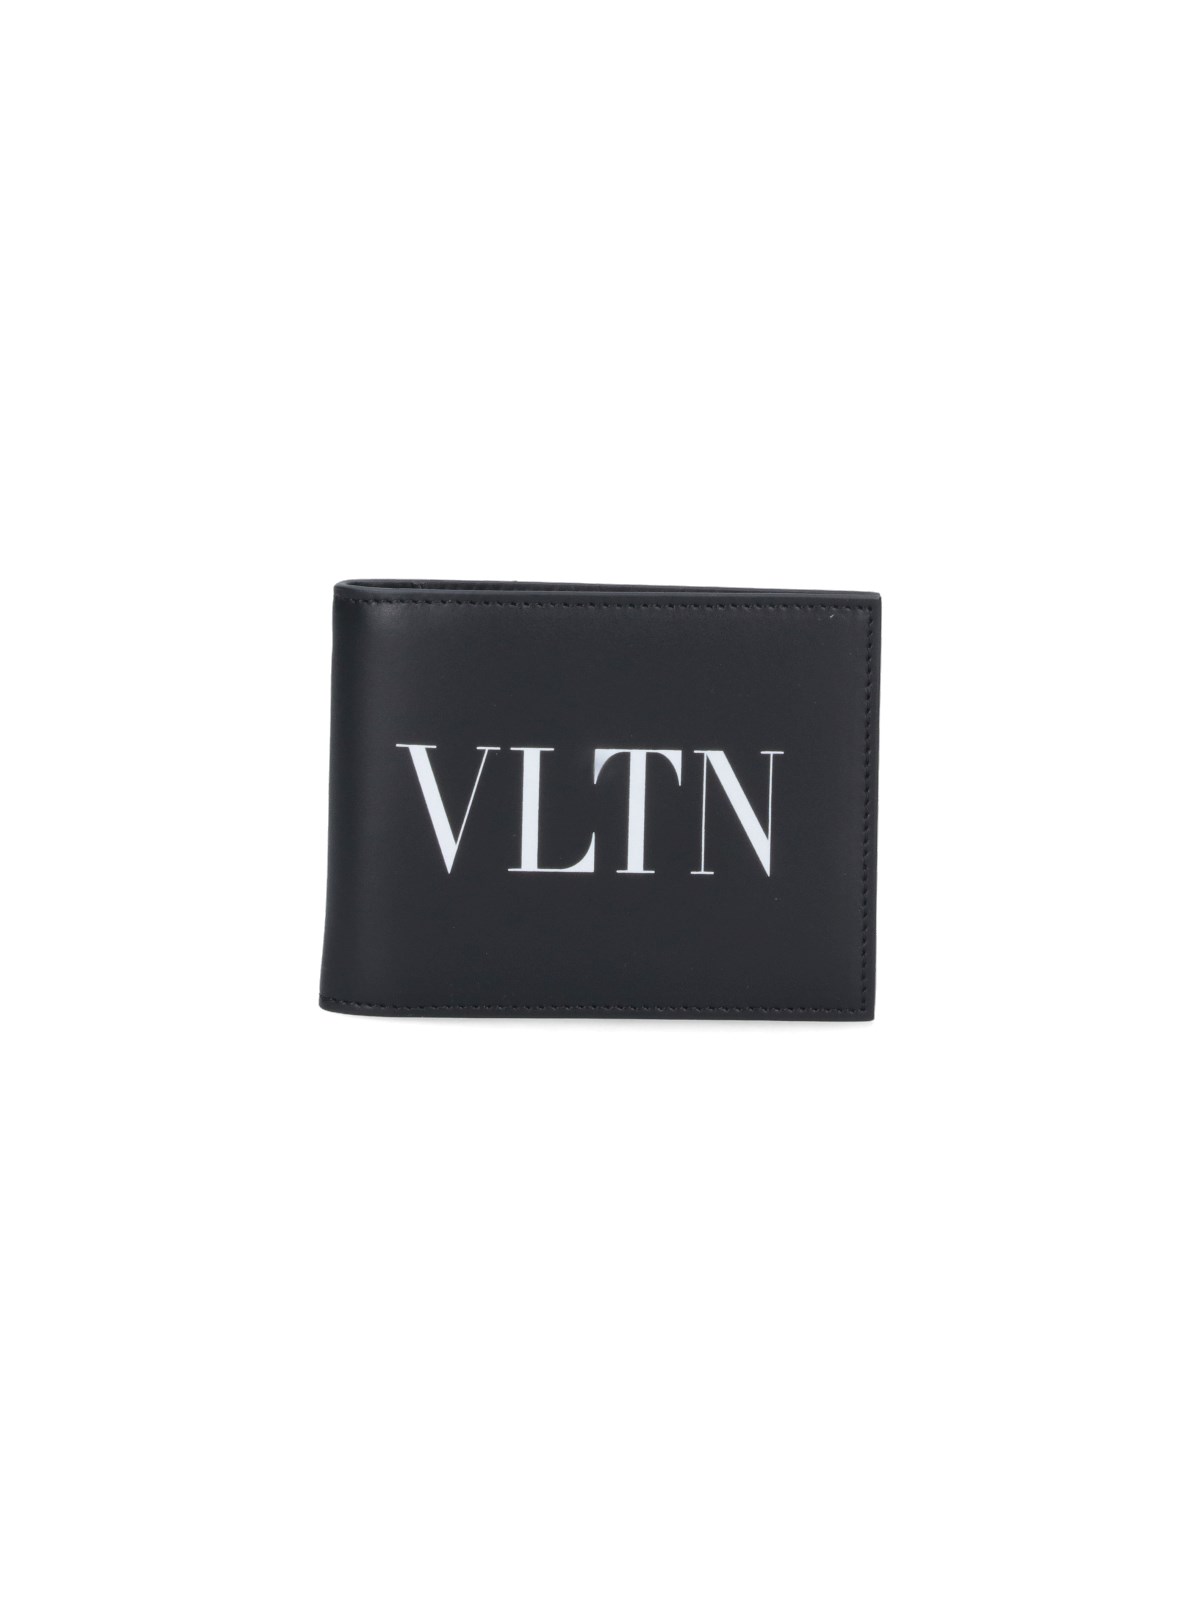 Valentino Garavani Vltn Wallet In Black  